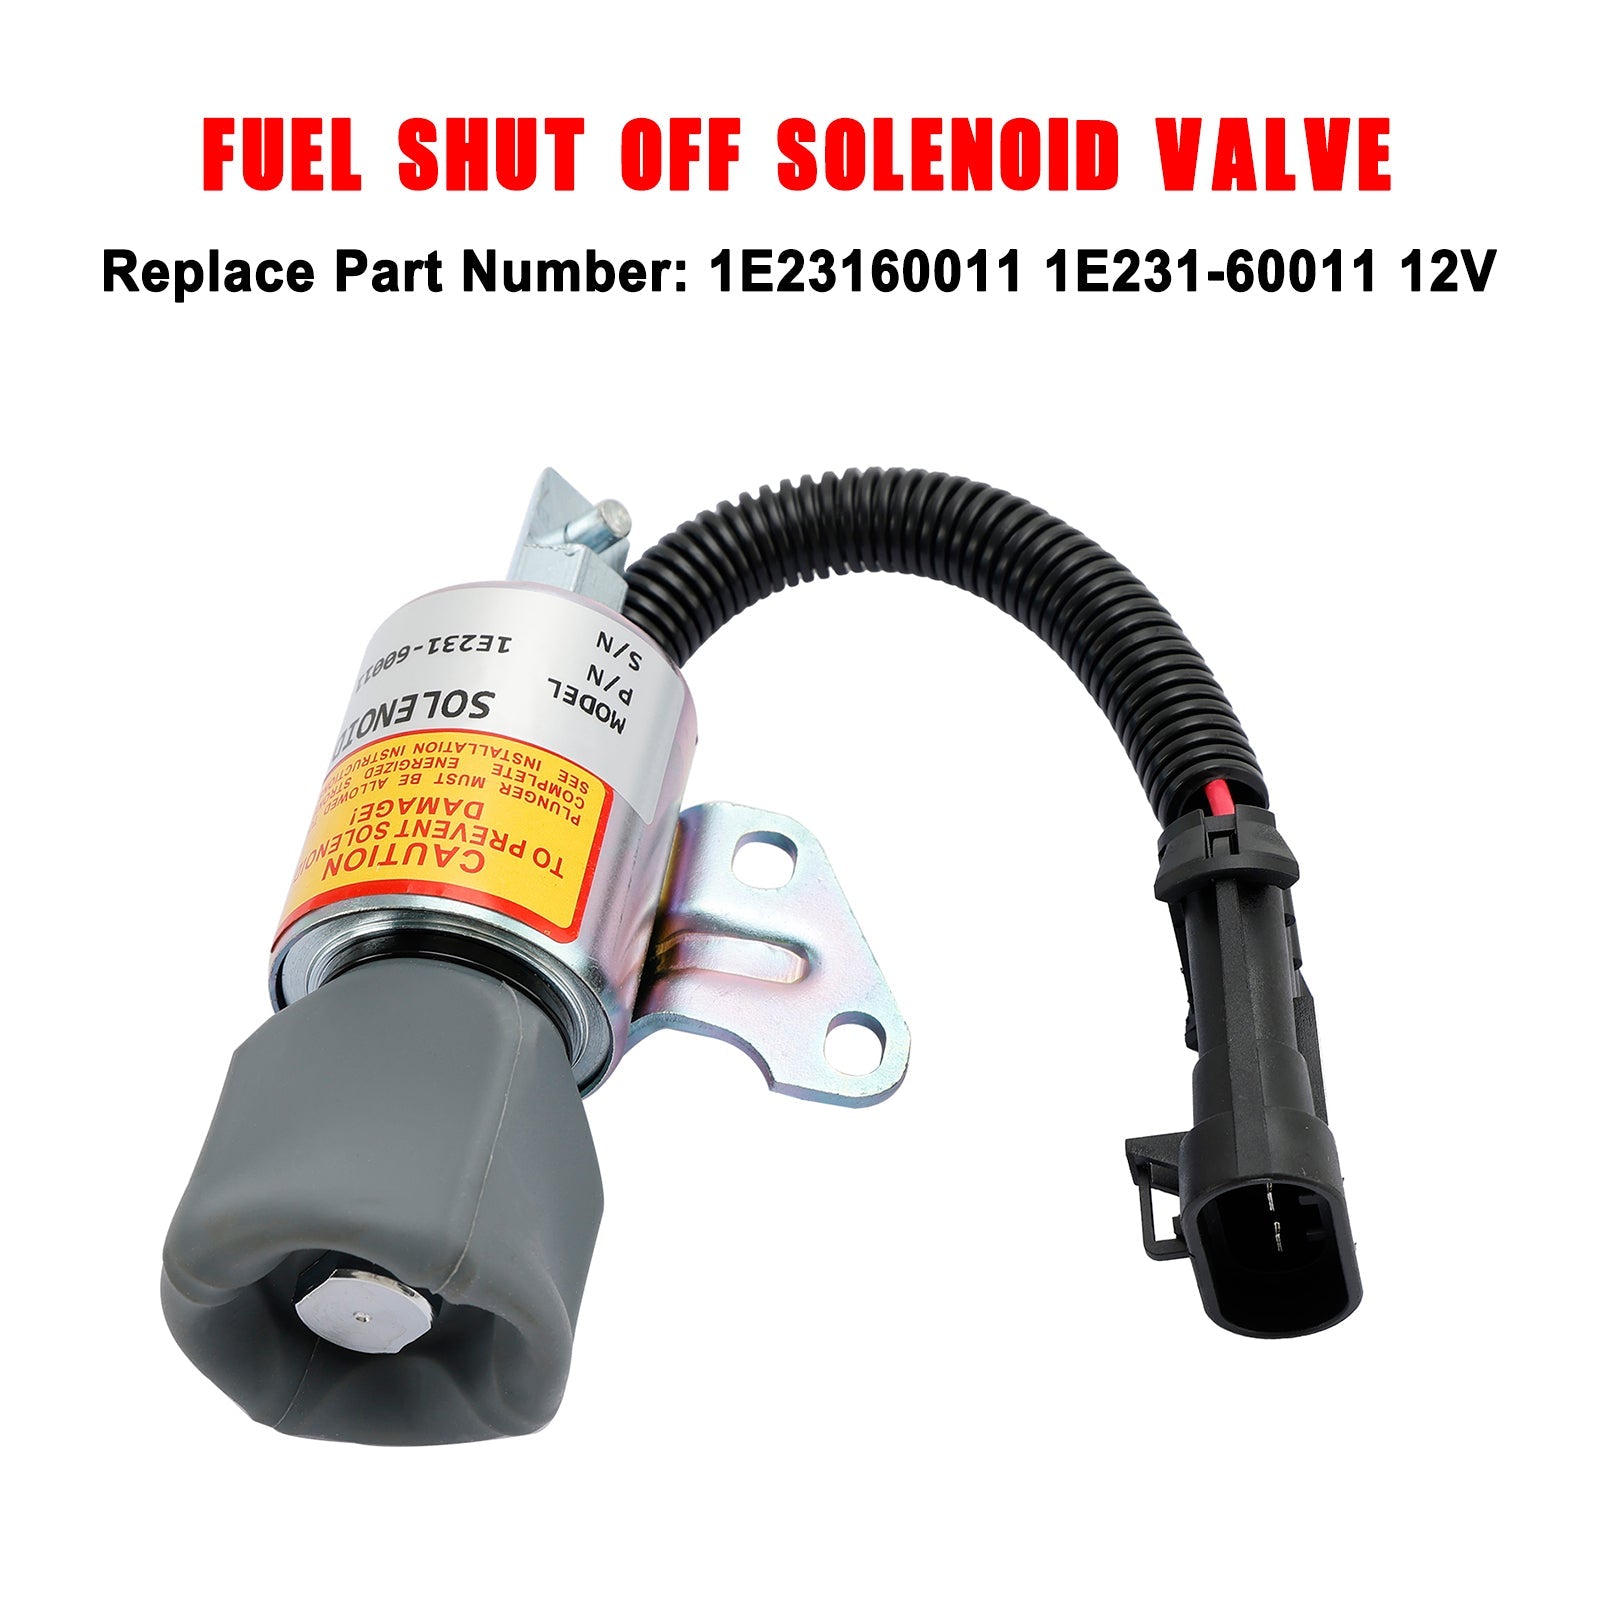 Solenoide de cierre de combustible 1E231-60011 para motor Kubota V2203 D722 D902 M8200